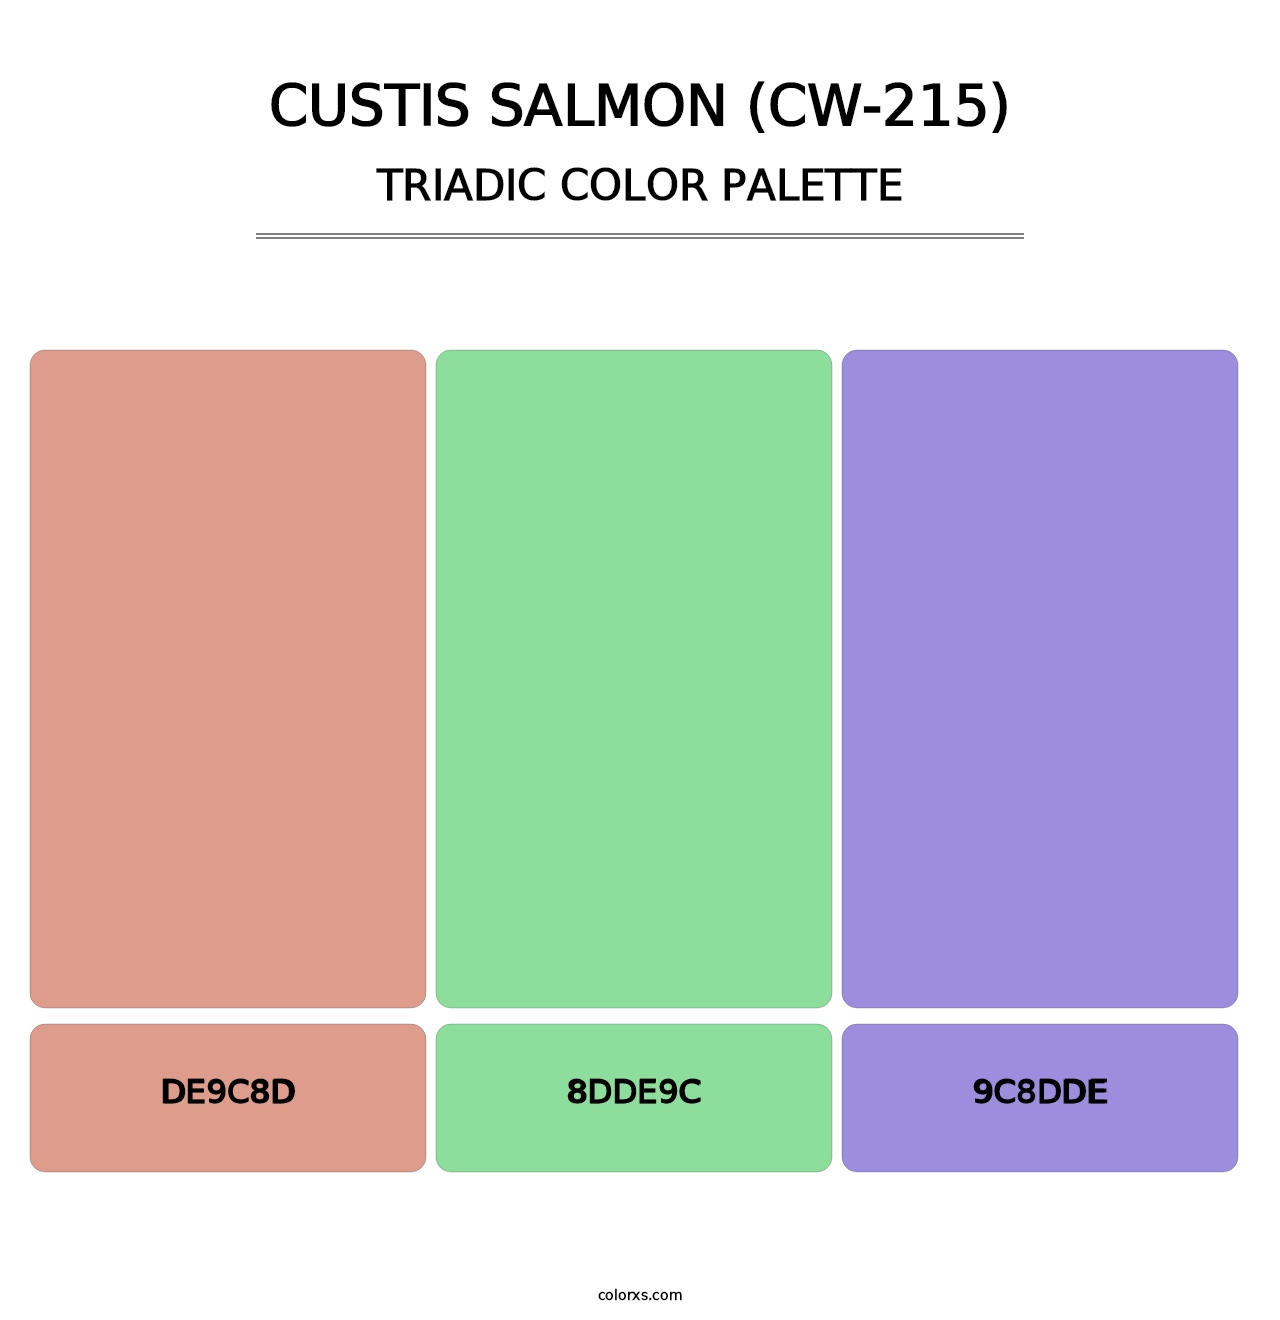 Custis Salmon (CW-215) - Triadic Color Palette